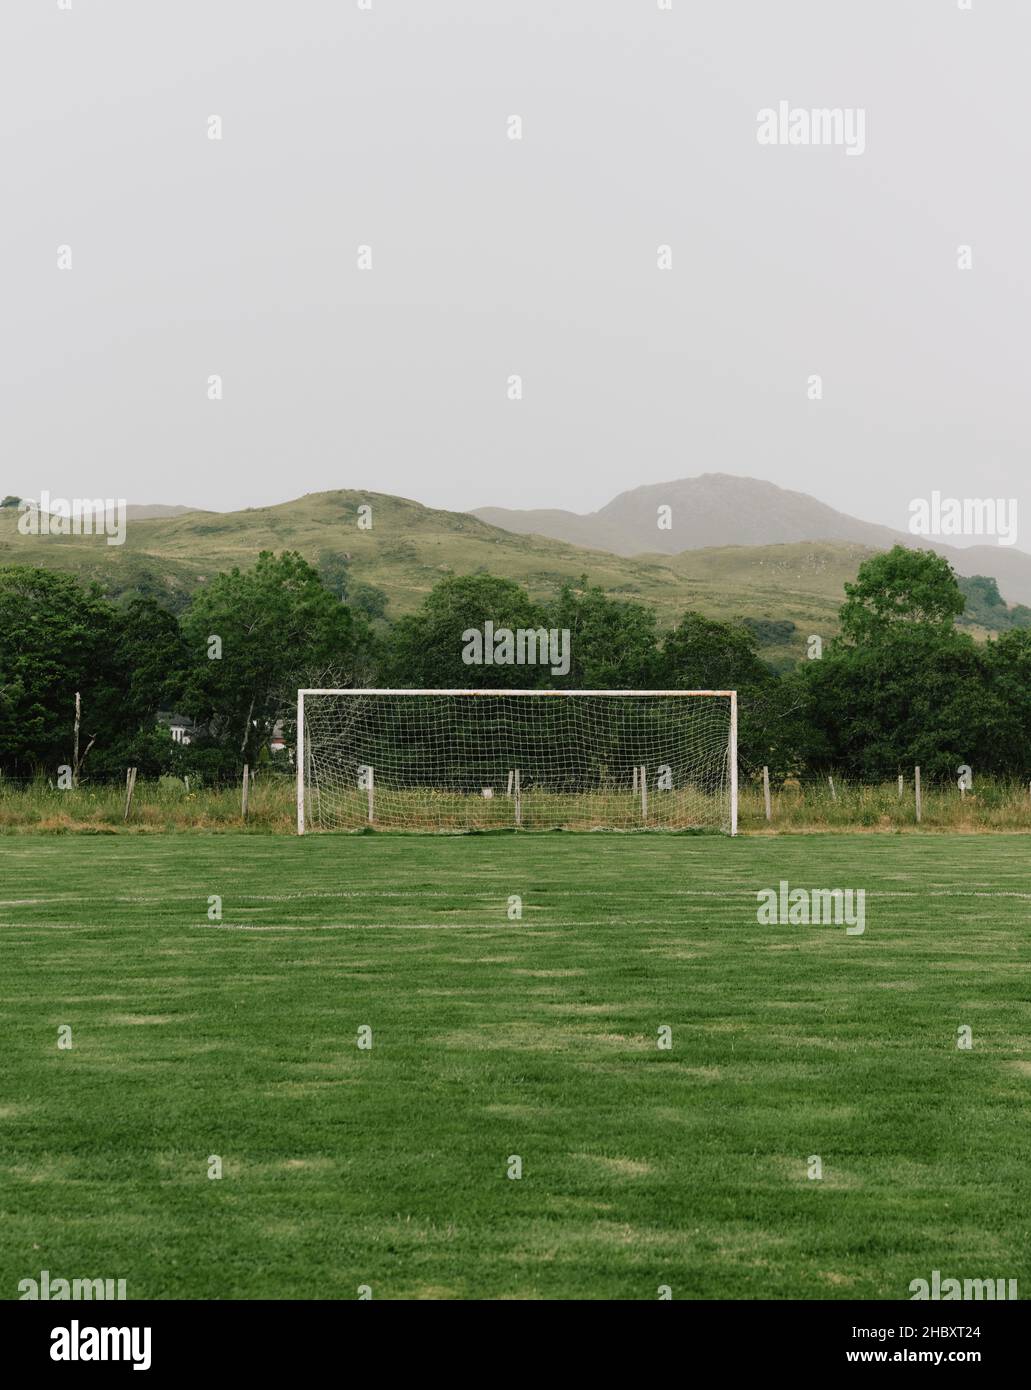 Un campo de fútbol vacío y solitario en el remoto paisaje rural de West Highland de Glenelg, Escocia Reino Unido - paisaje de fútbol vacío Foto de stock